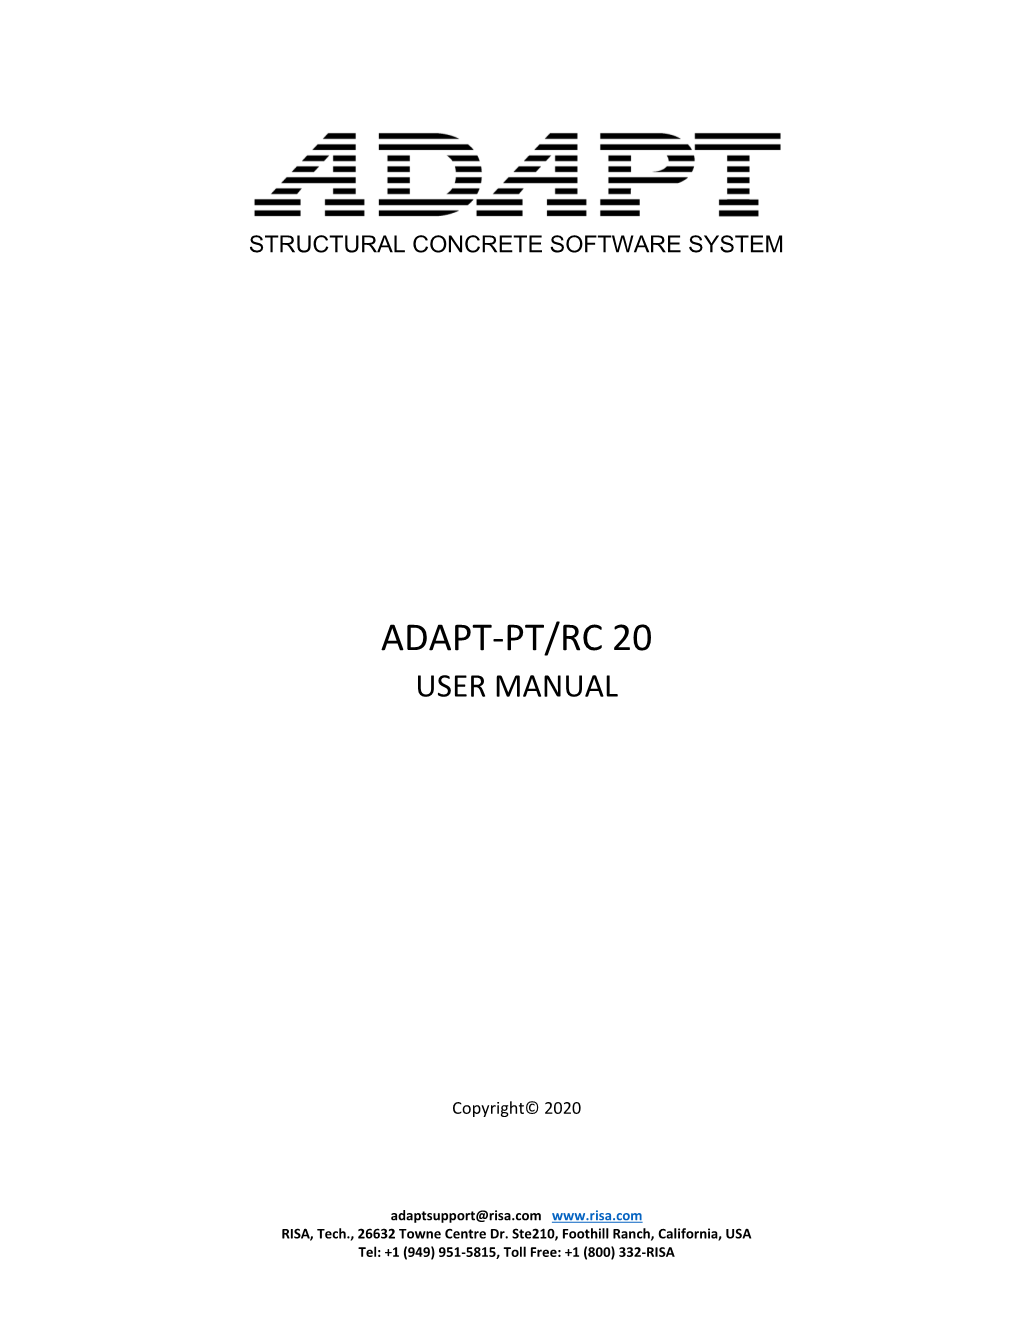 Adapt-Pt/Rc 20 User Manual